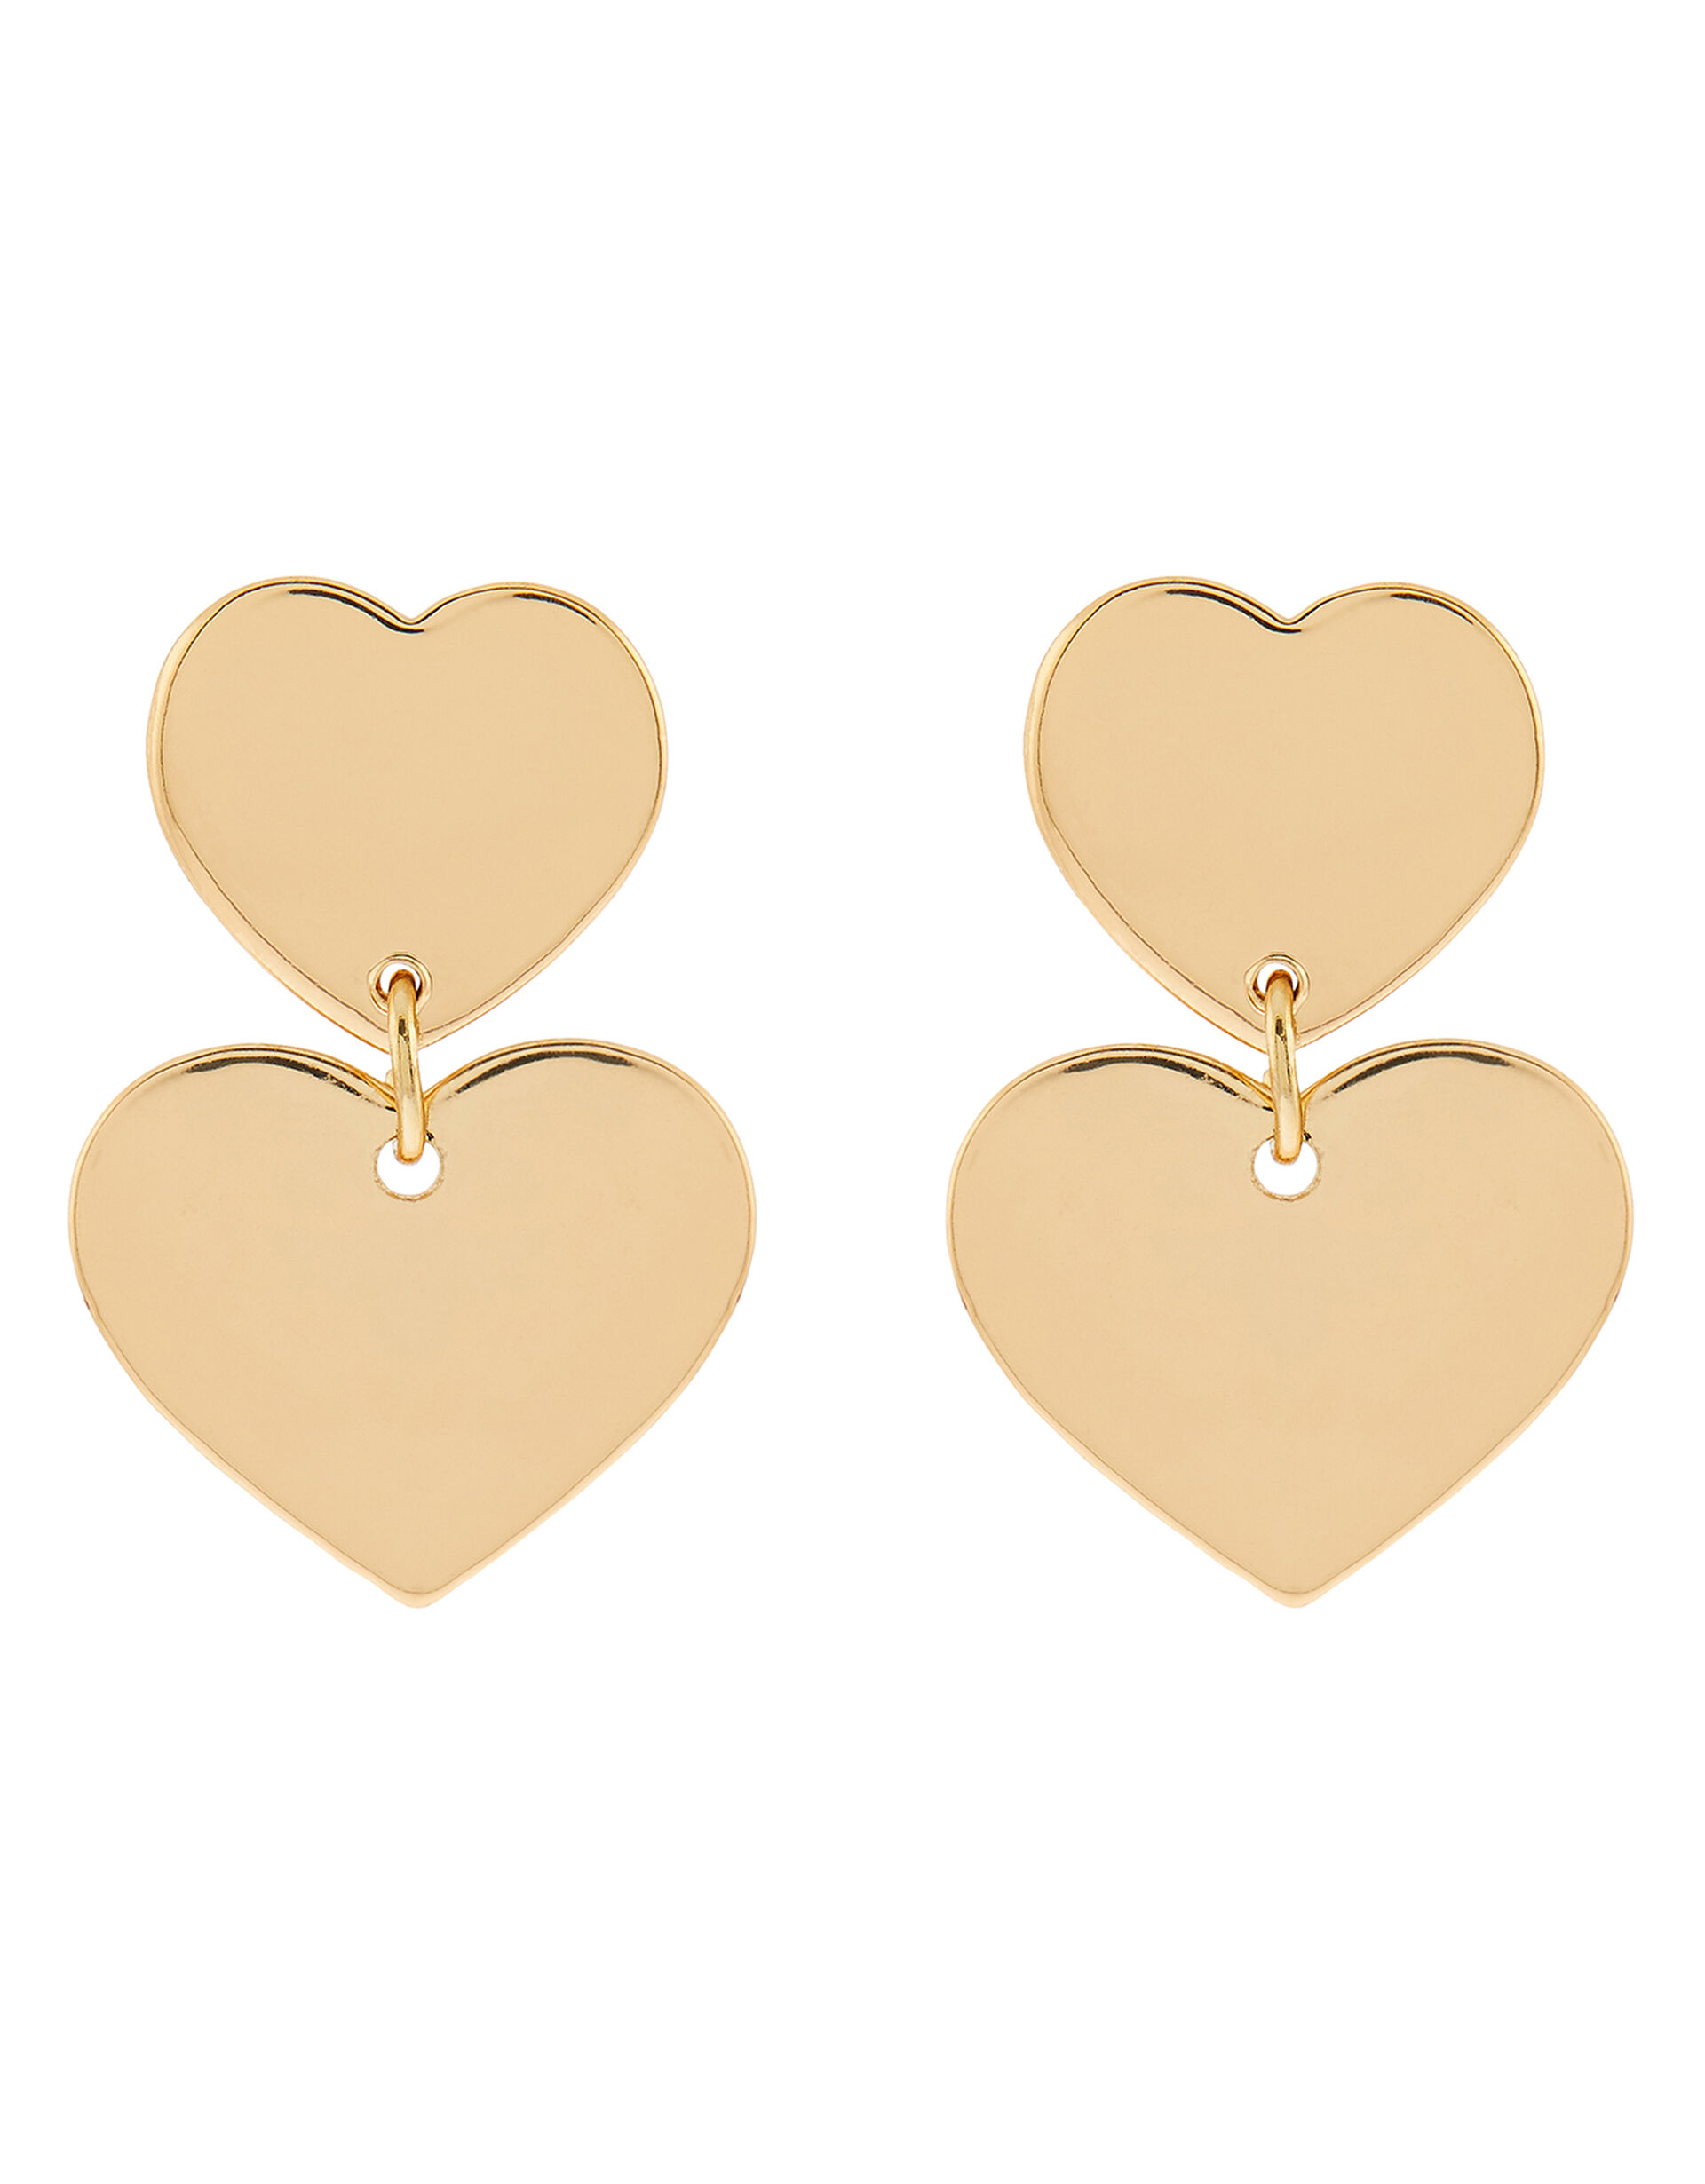 Double Heart Short Drop Earrings, , large